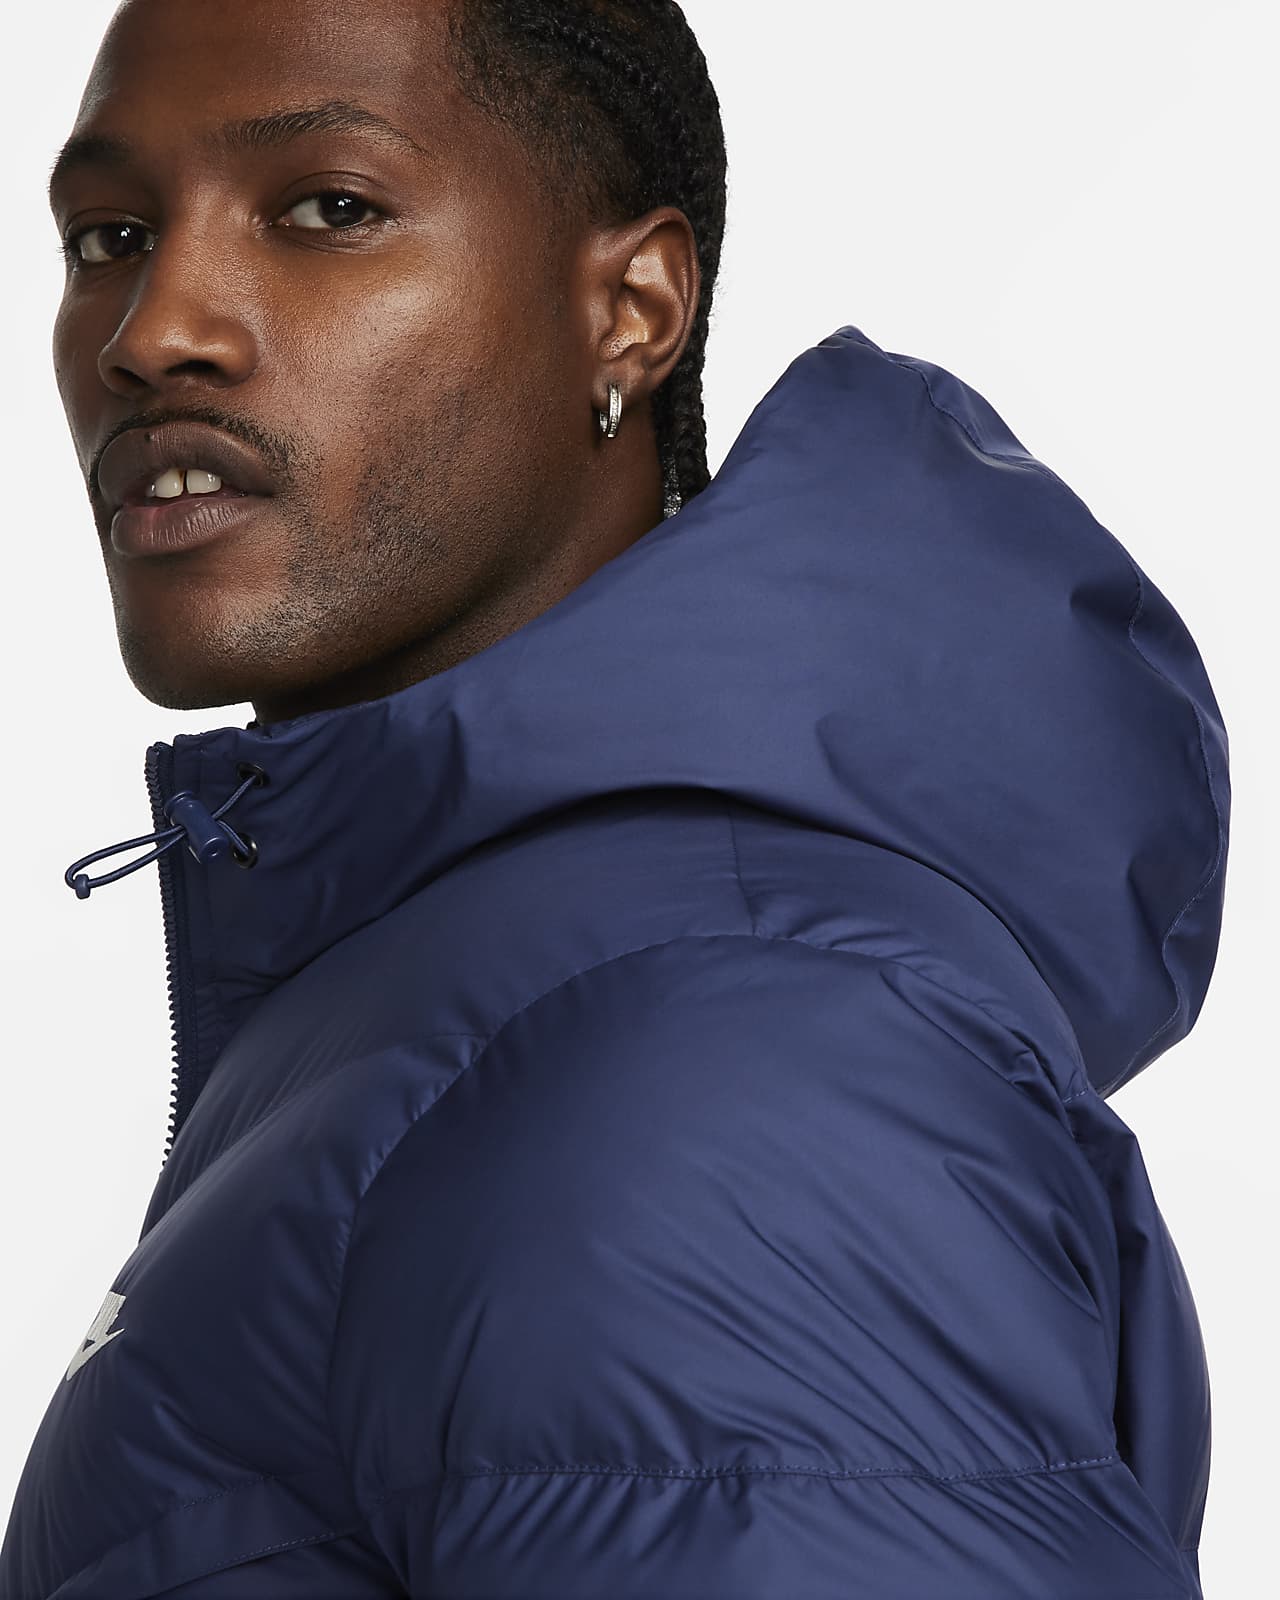 Nike Windrunner PrimaLoft® Men's Storm-FIT Hooded Parka Jacket.